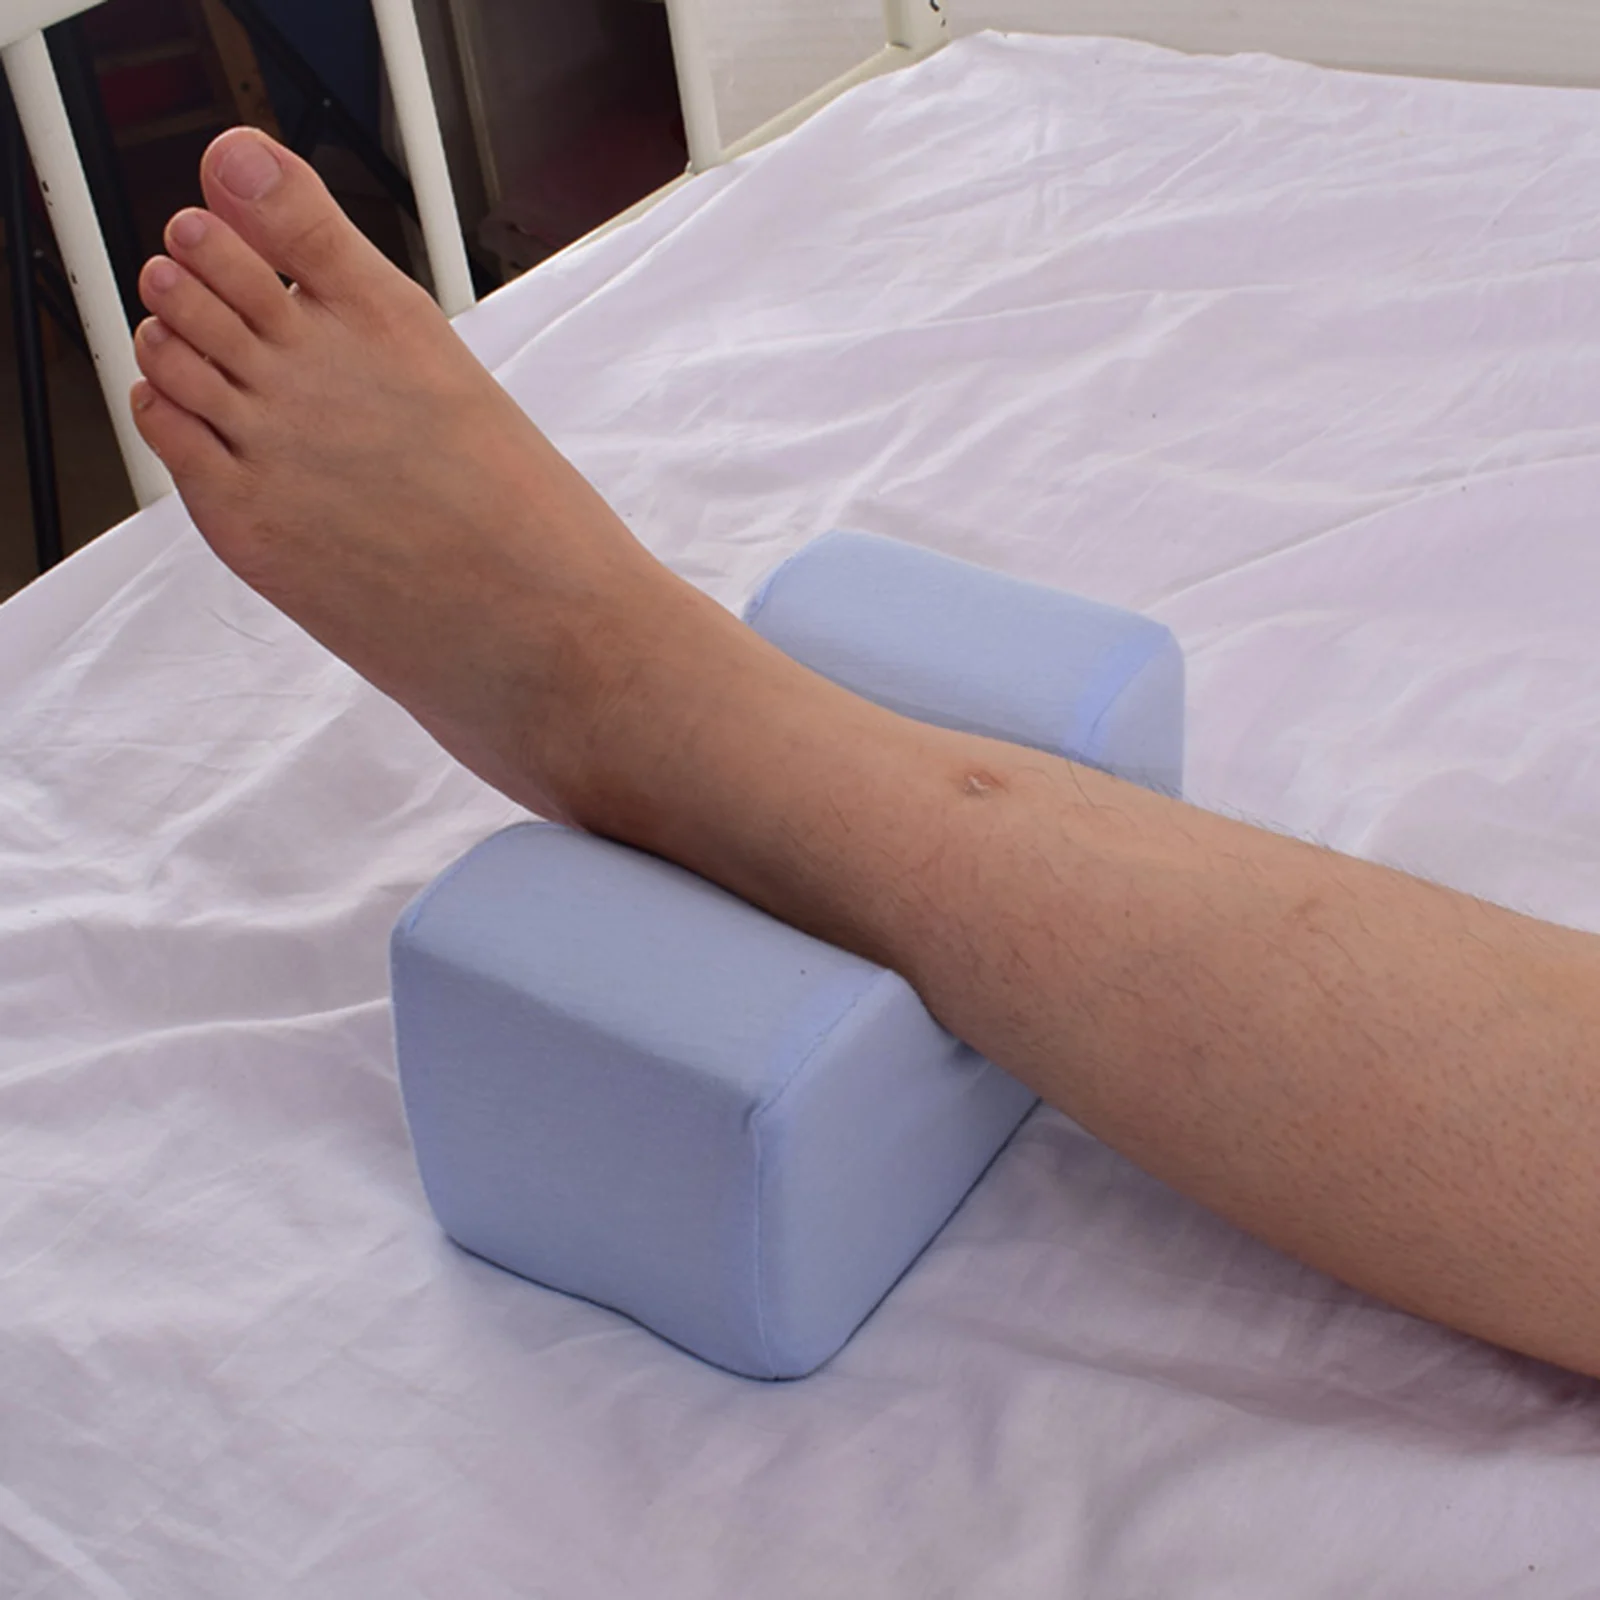 https://ae01.alicdn.com/kf/Hda4917ce5b884cc9b7d7e323bc8303959/Foot-Pillows-Raise-Mat-Elevating-Leg-Rest-Bedridden-Patient-Ankle-Heel-Knee-Protector-Anti-Cushion.jpg